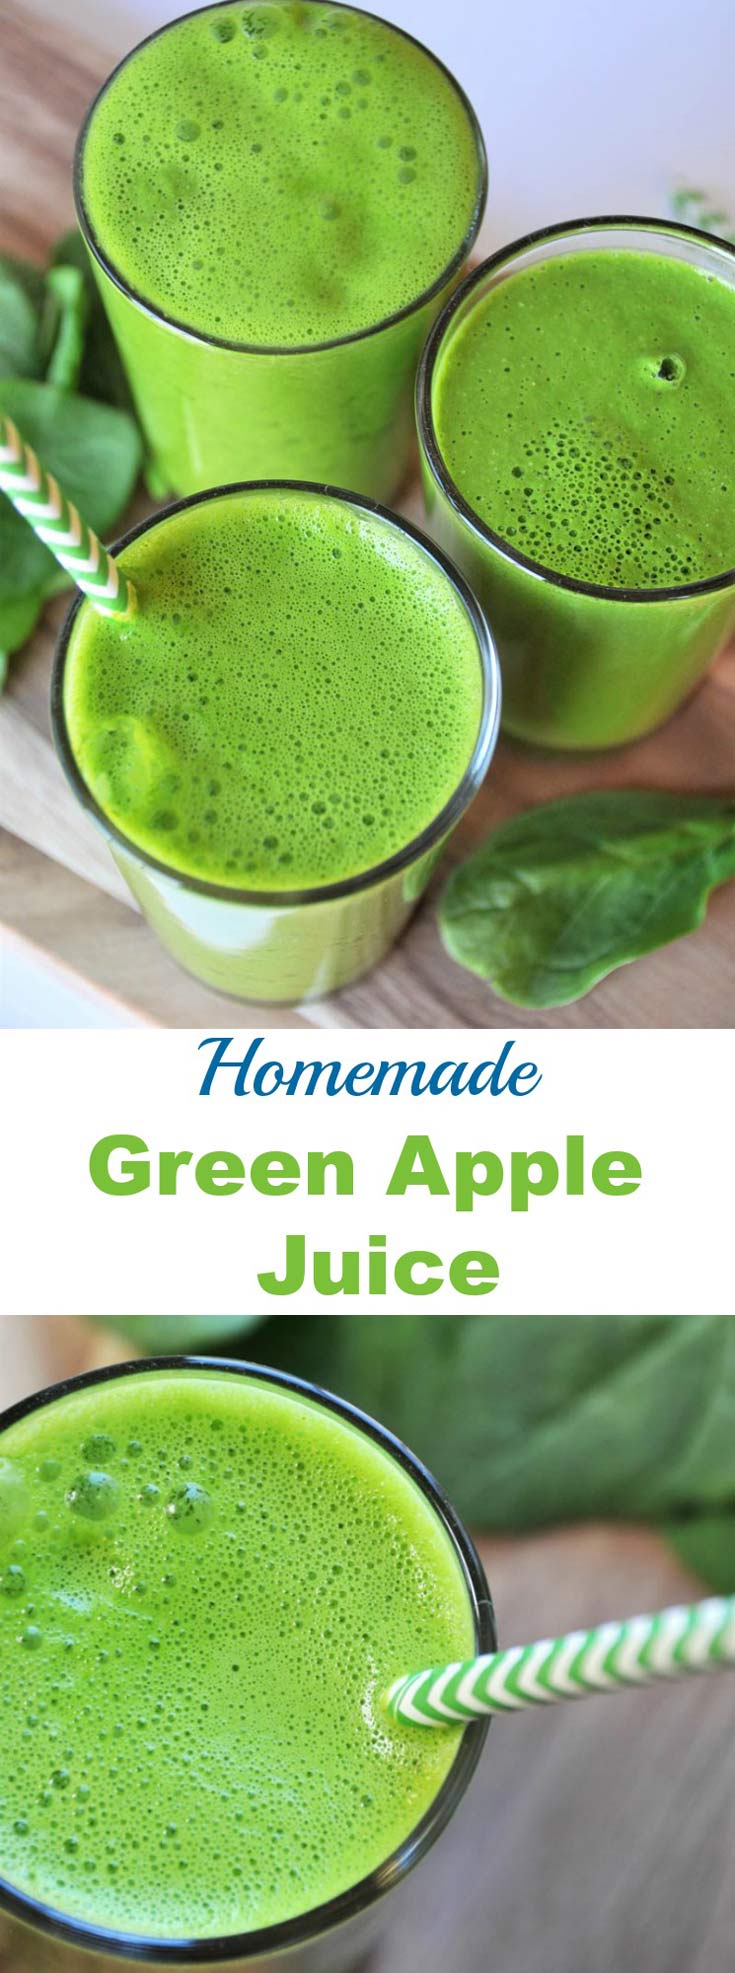 5 składnikowy domowy zielony sok ze szpinakiem, jabłkiem, cytryną i kurkumą. Zdrowy i smaczny sposób na picie swoich warzyw.